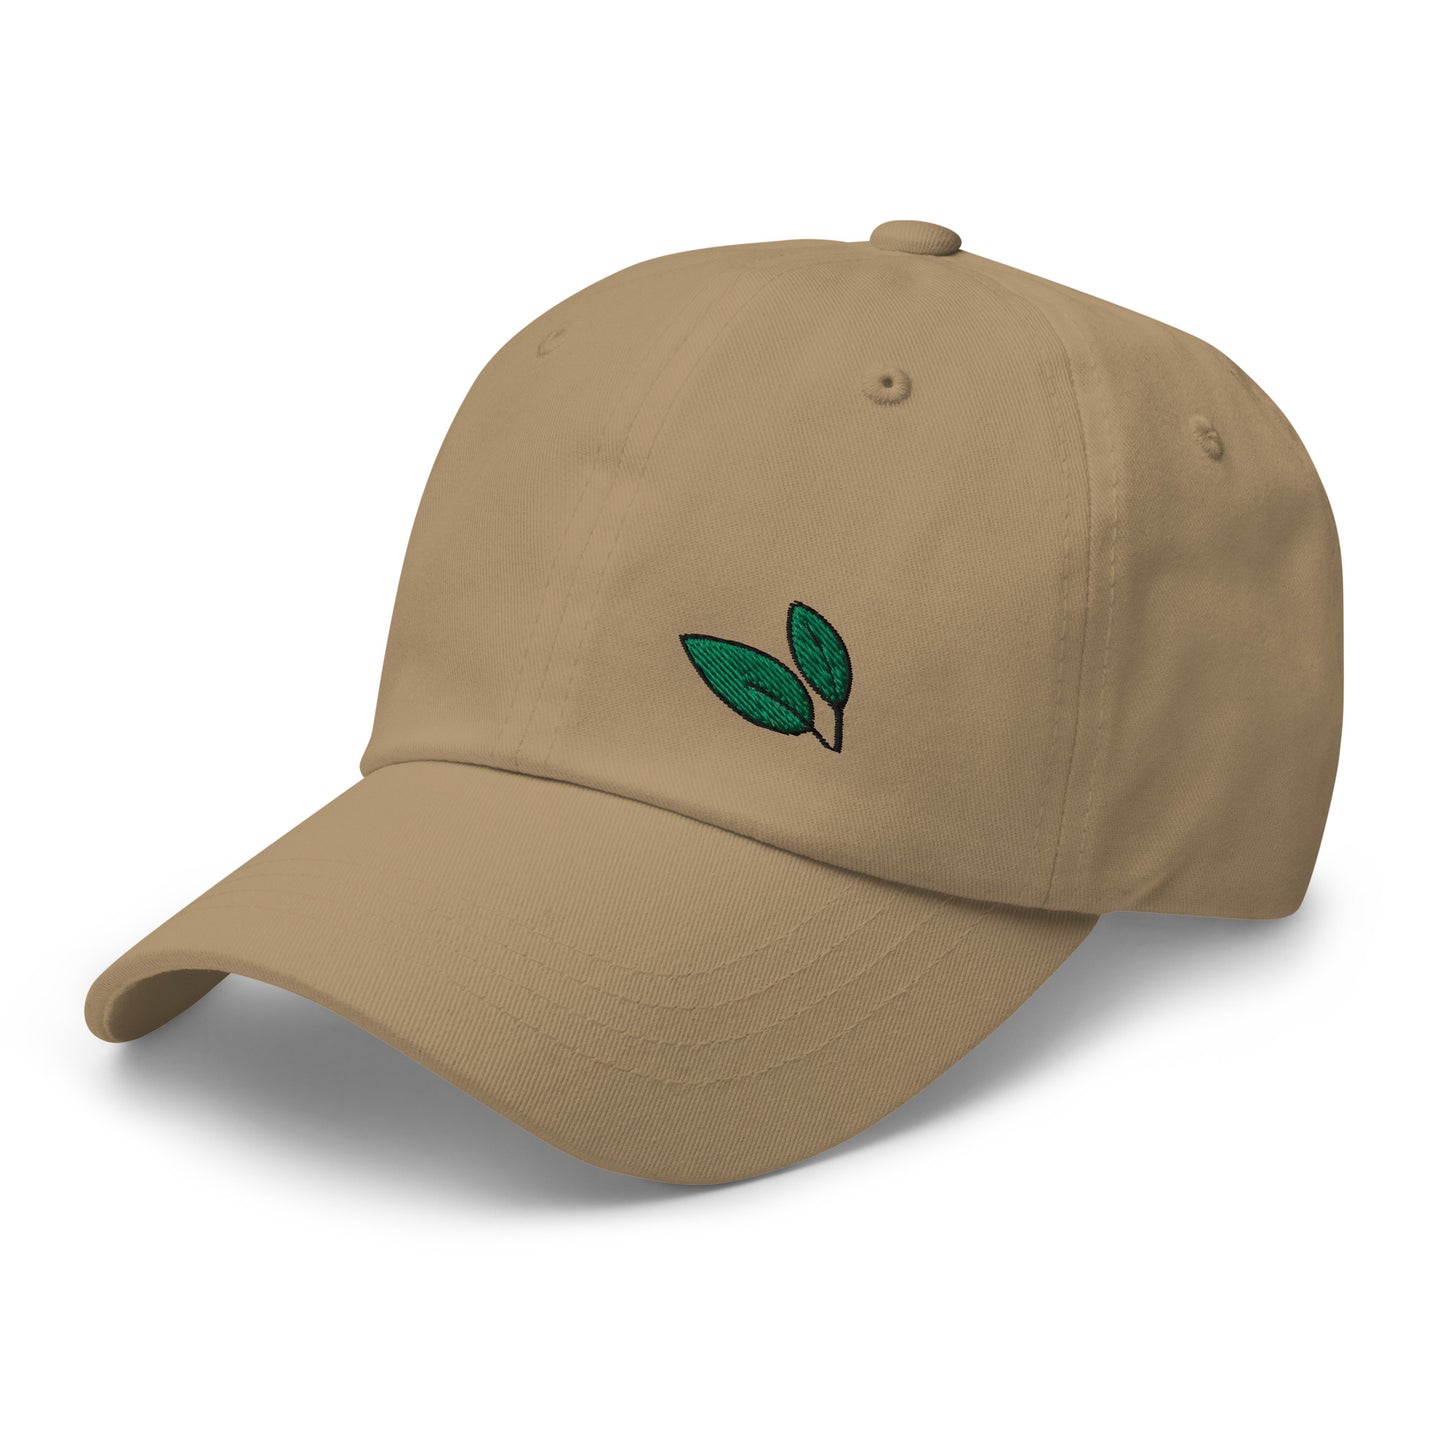 Dad Cap with Leaf Symbol